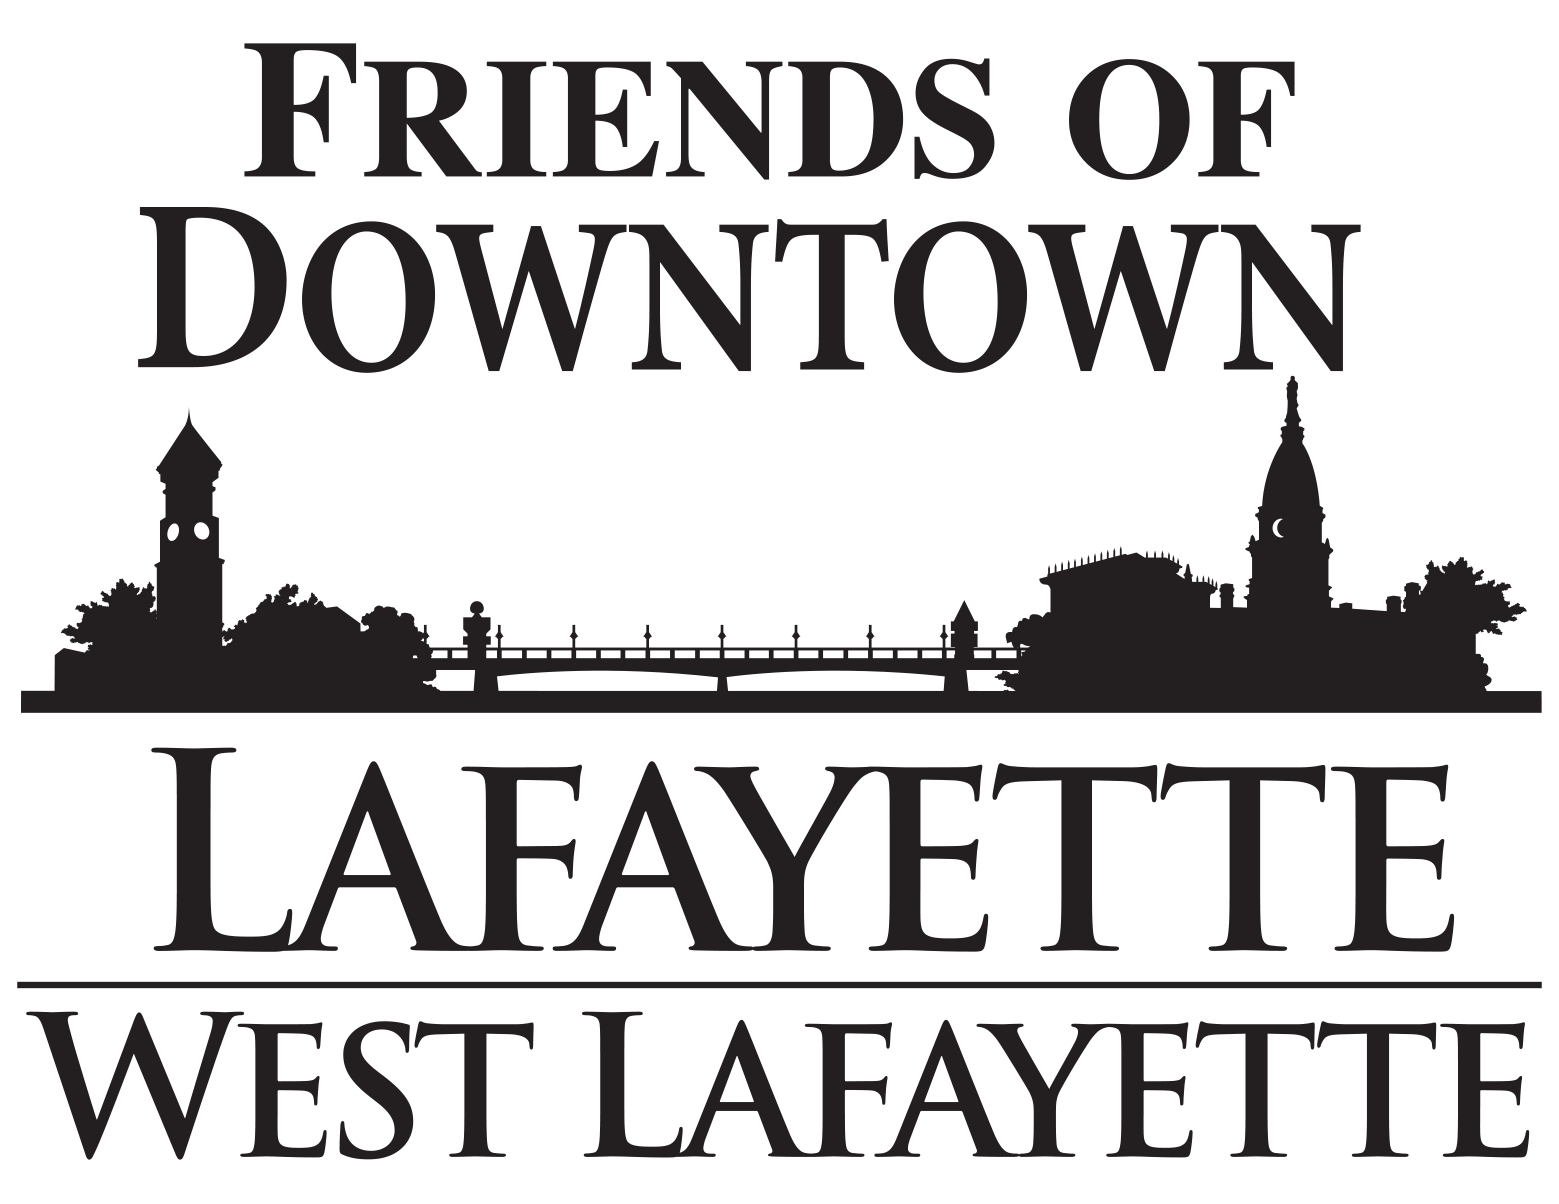 Friends of Downtown Lafayette